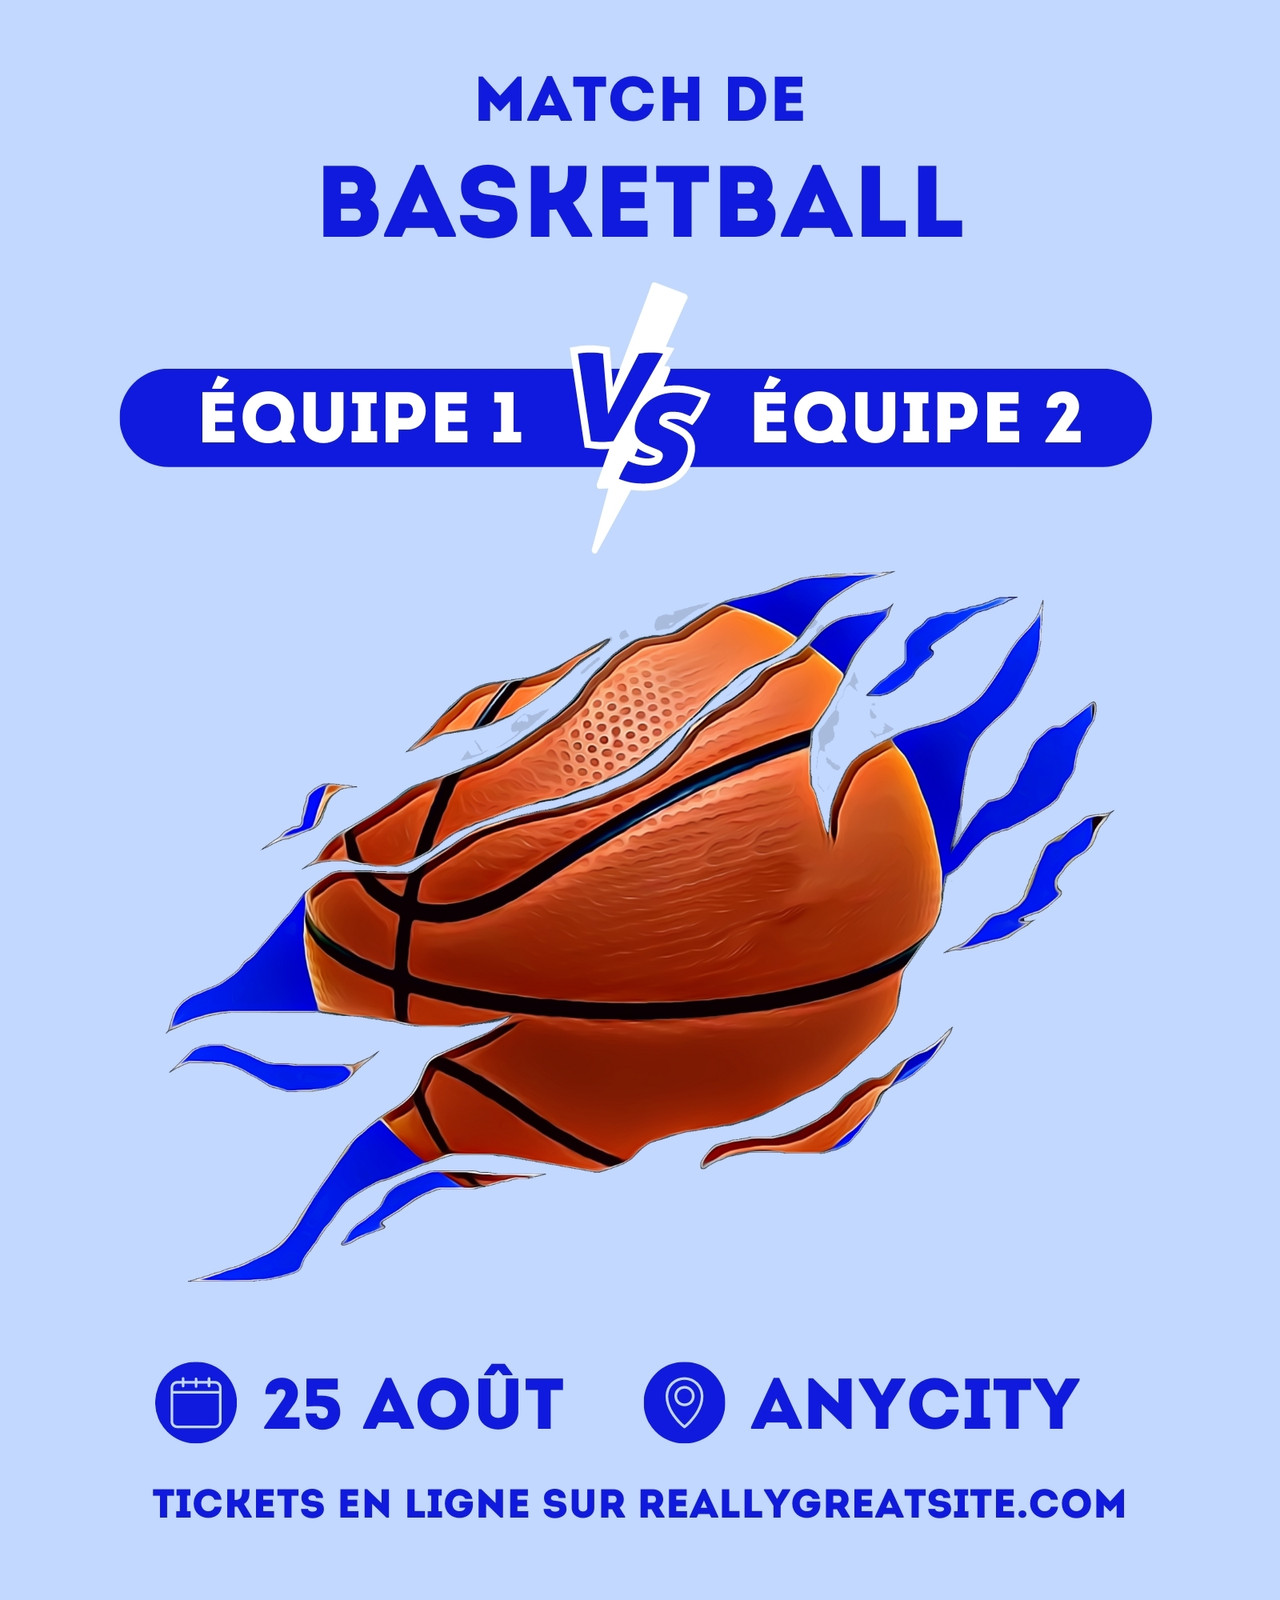 Affiche du match de basket-ball vert-bleu - Venngage